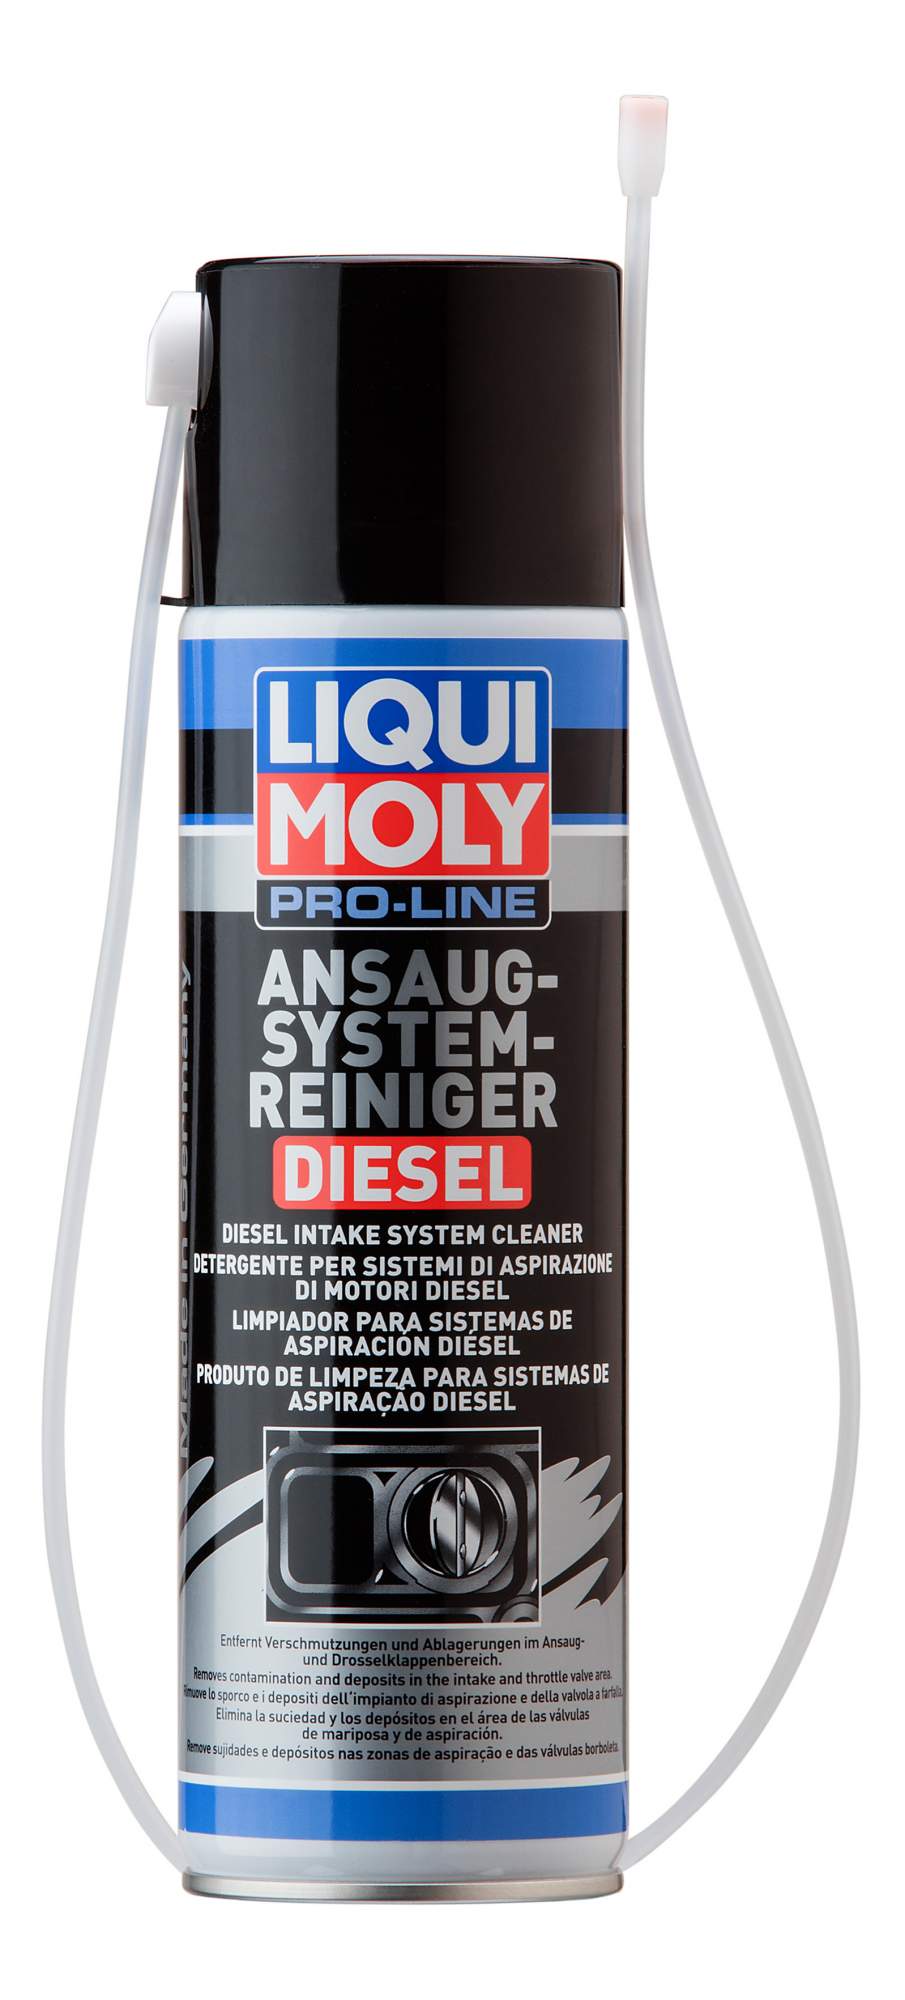 Очиститель дизельного впуска LIQUI MOLY 5168 Pro-Line Ansaug System Reiniger Diesel